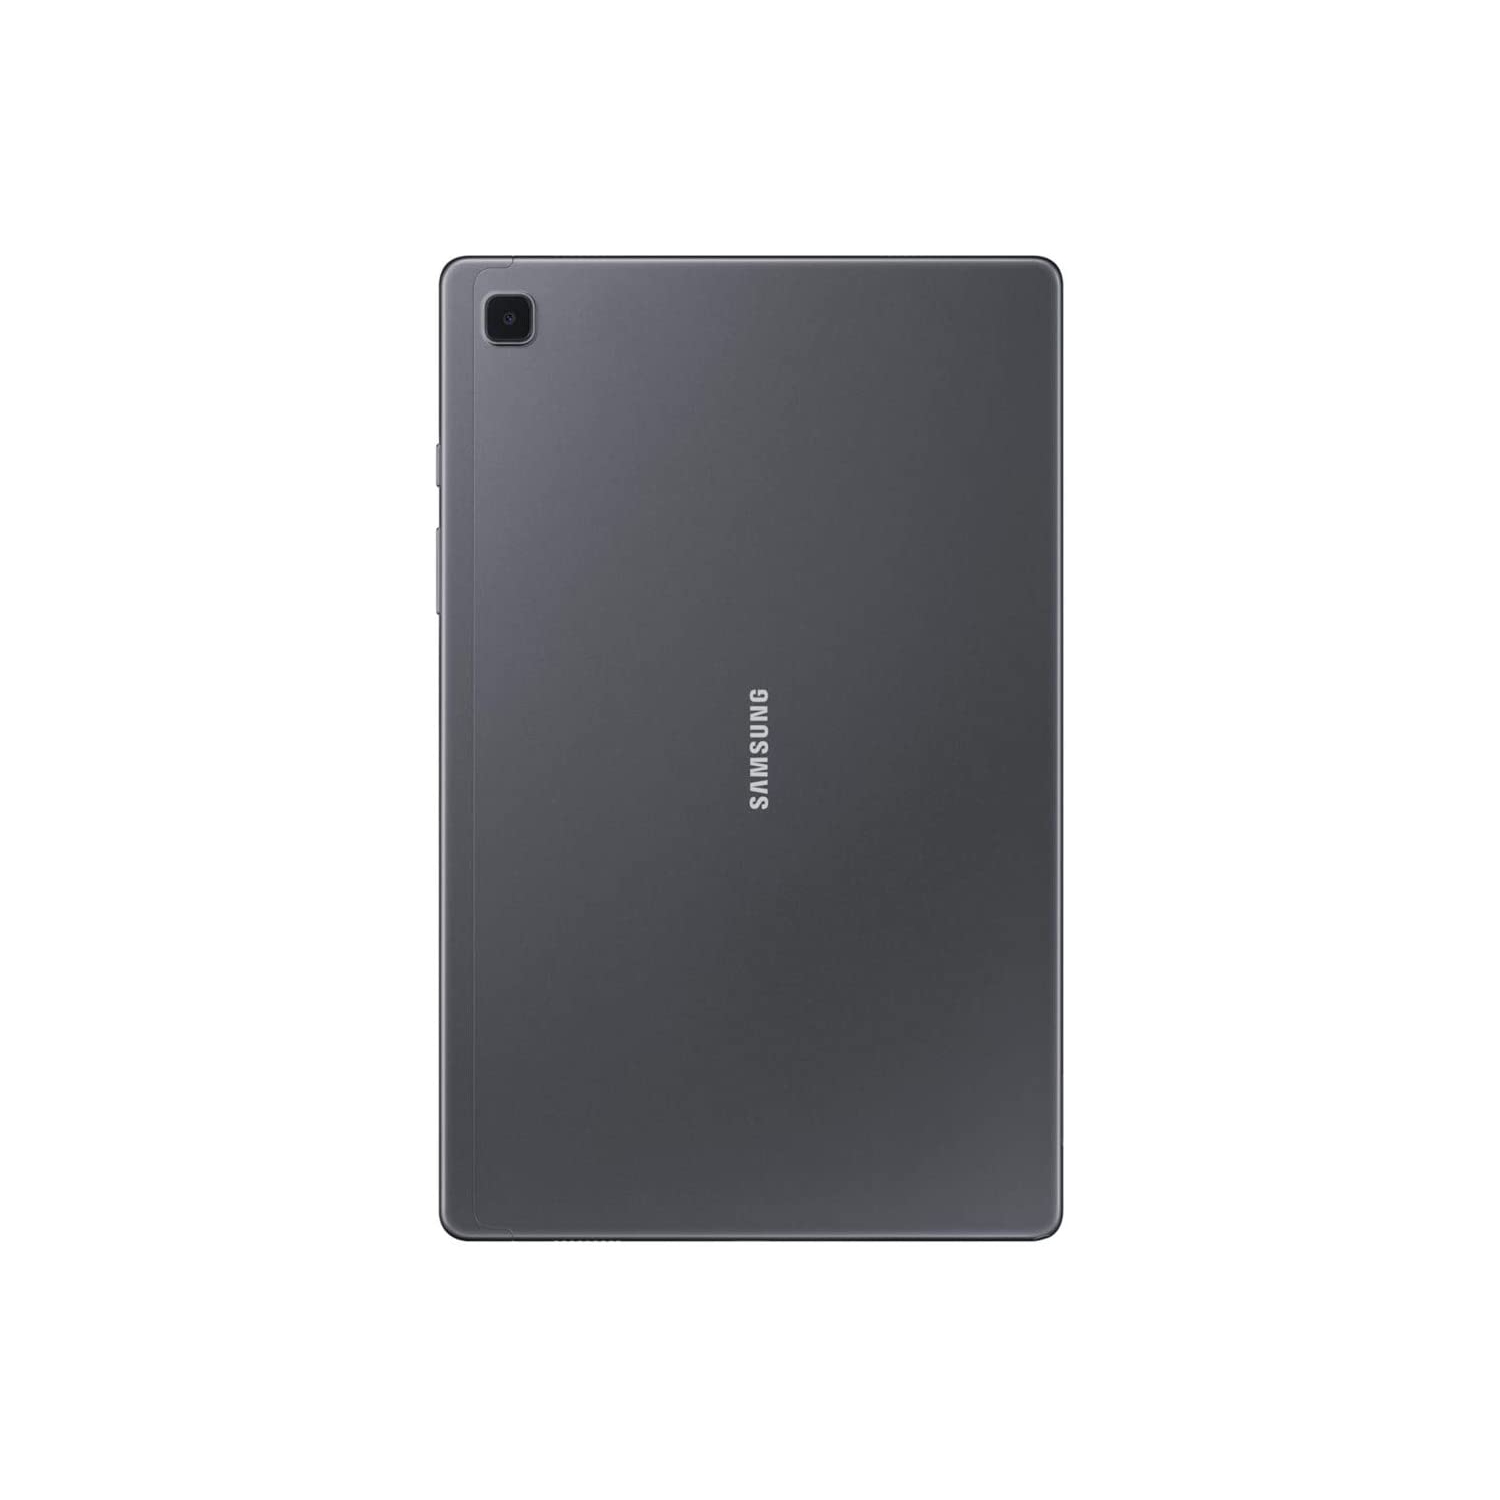 Samsung Galaxy Tab A7 Lite (SM-T220) (32GB/3GB, Grey, Wifi) - Brand New